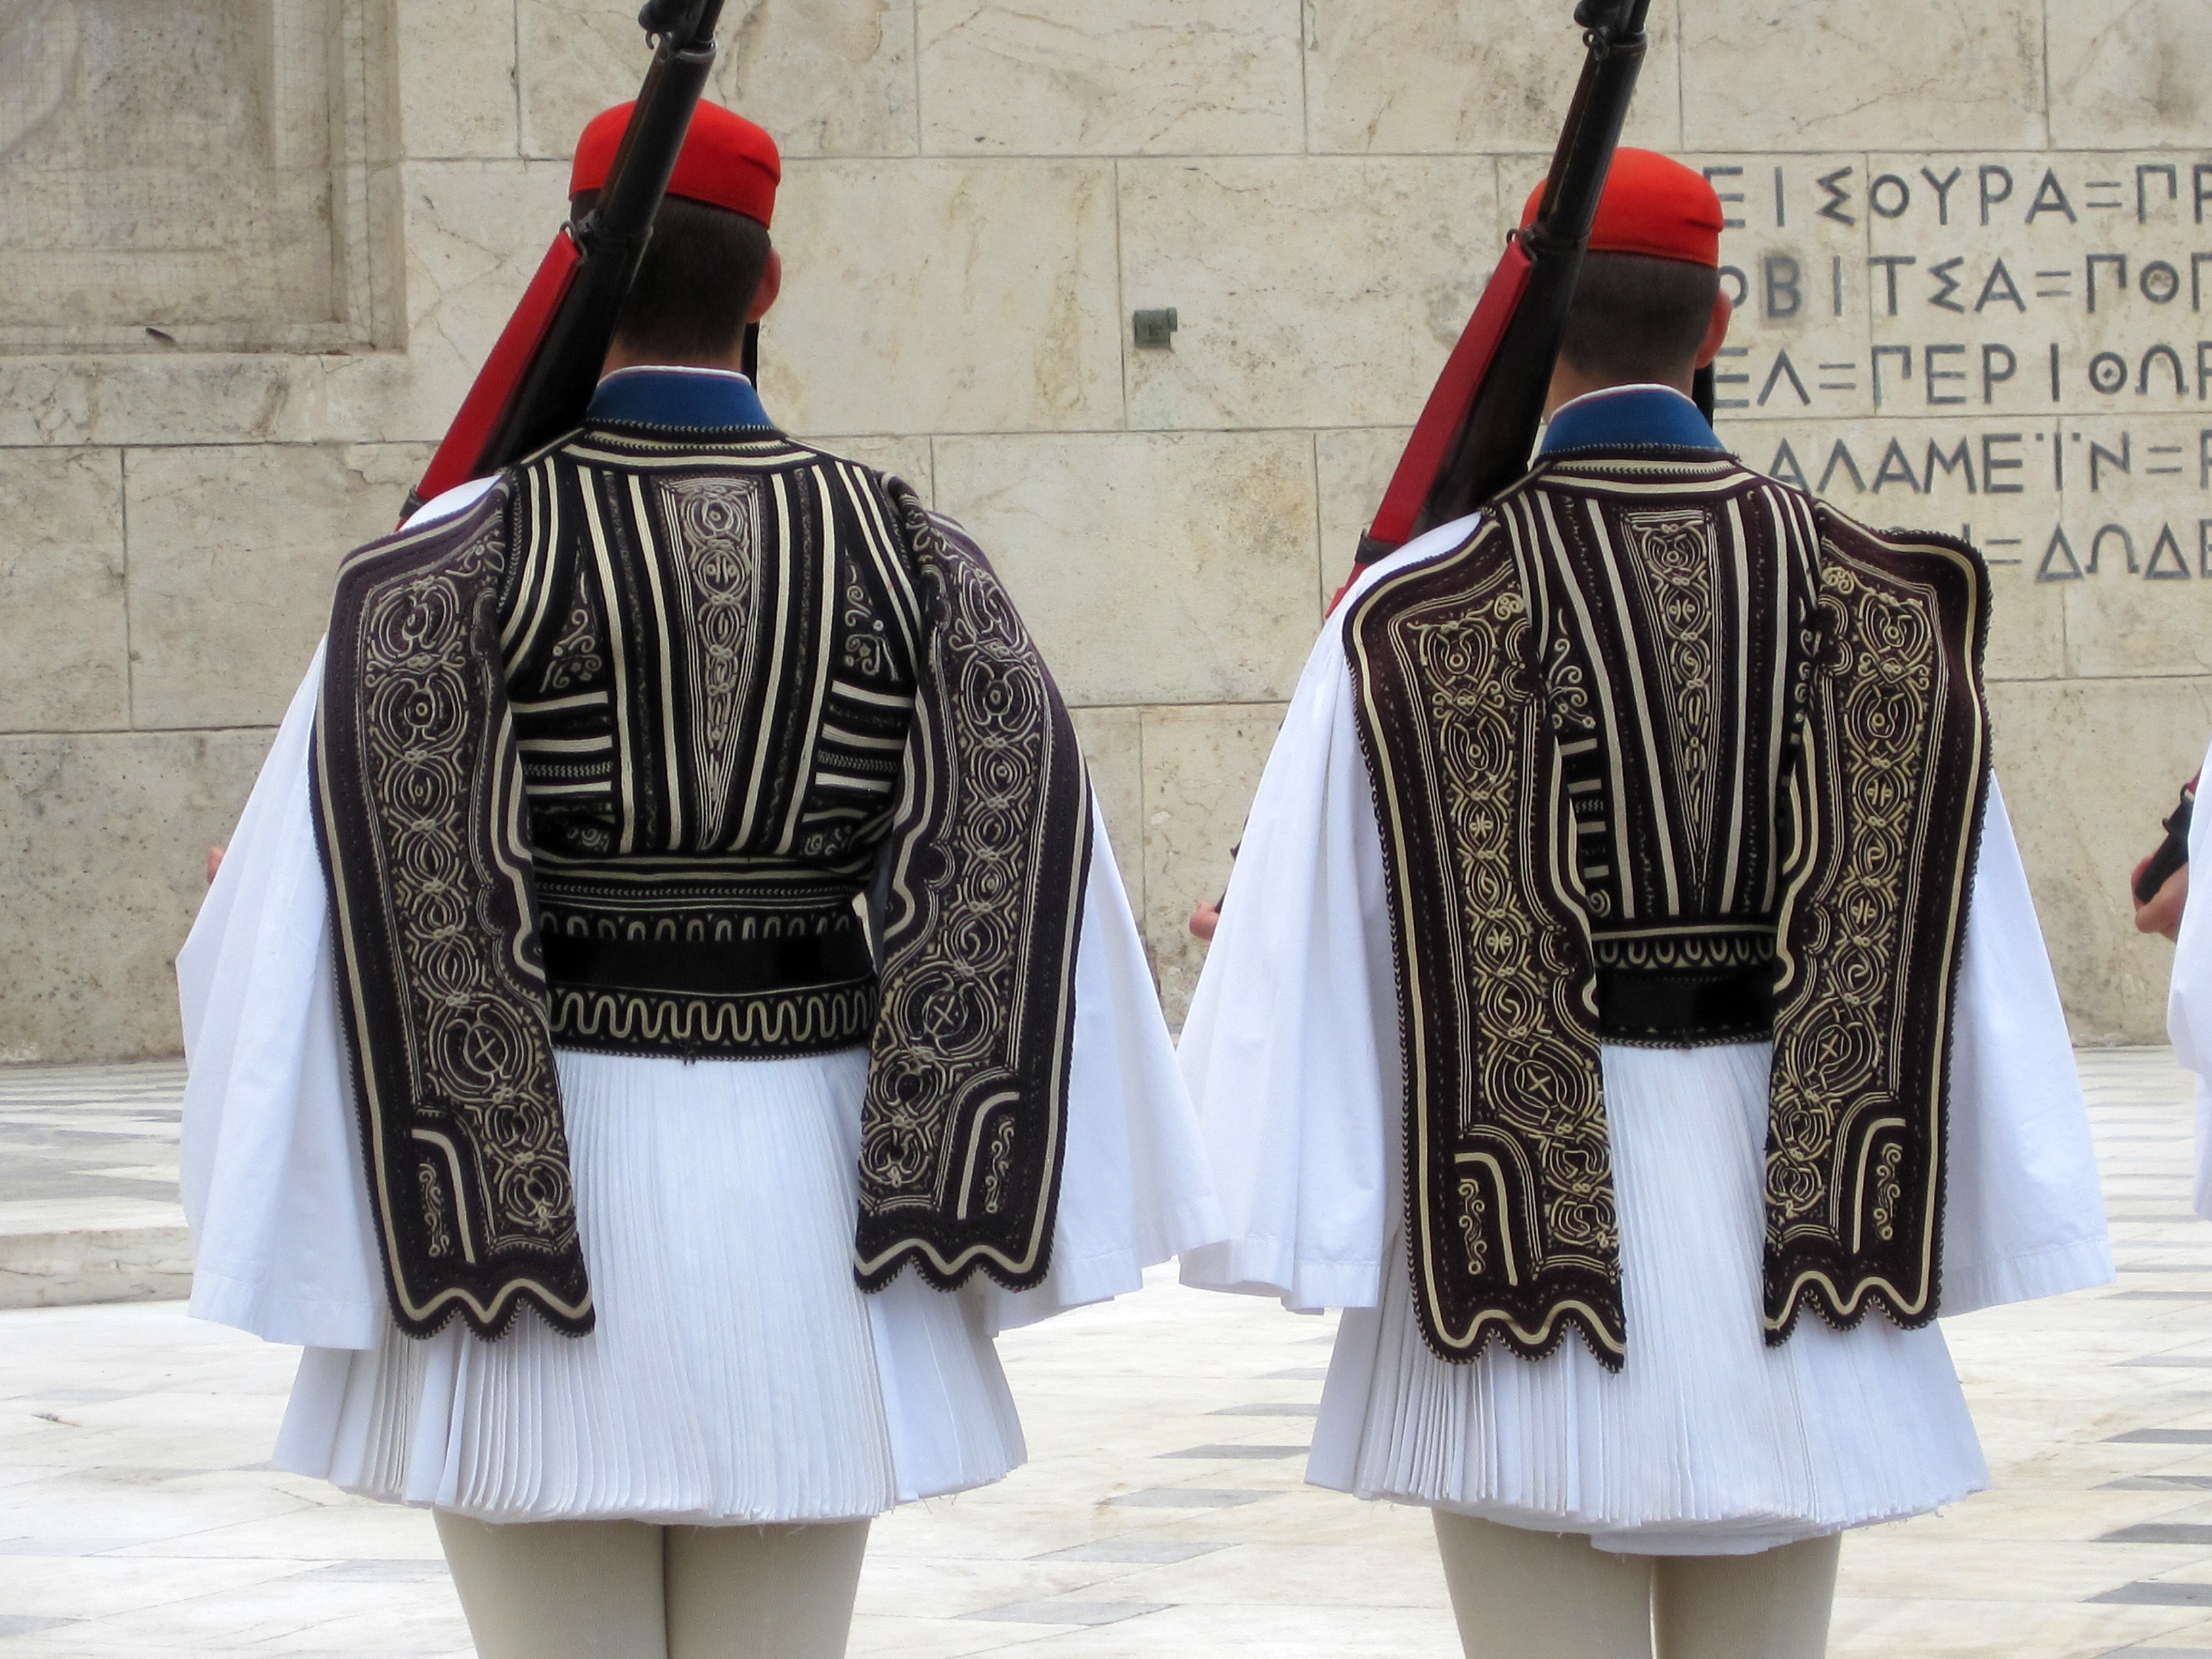 Greek Soldier Uniform 15